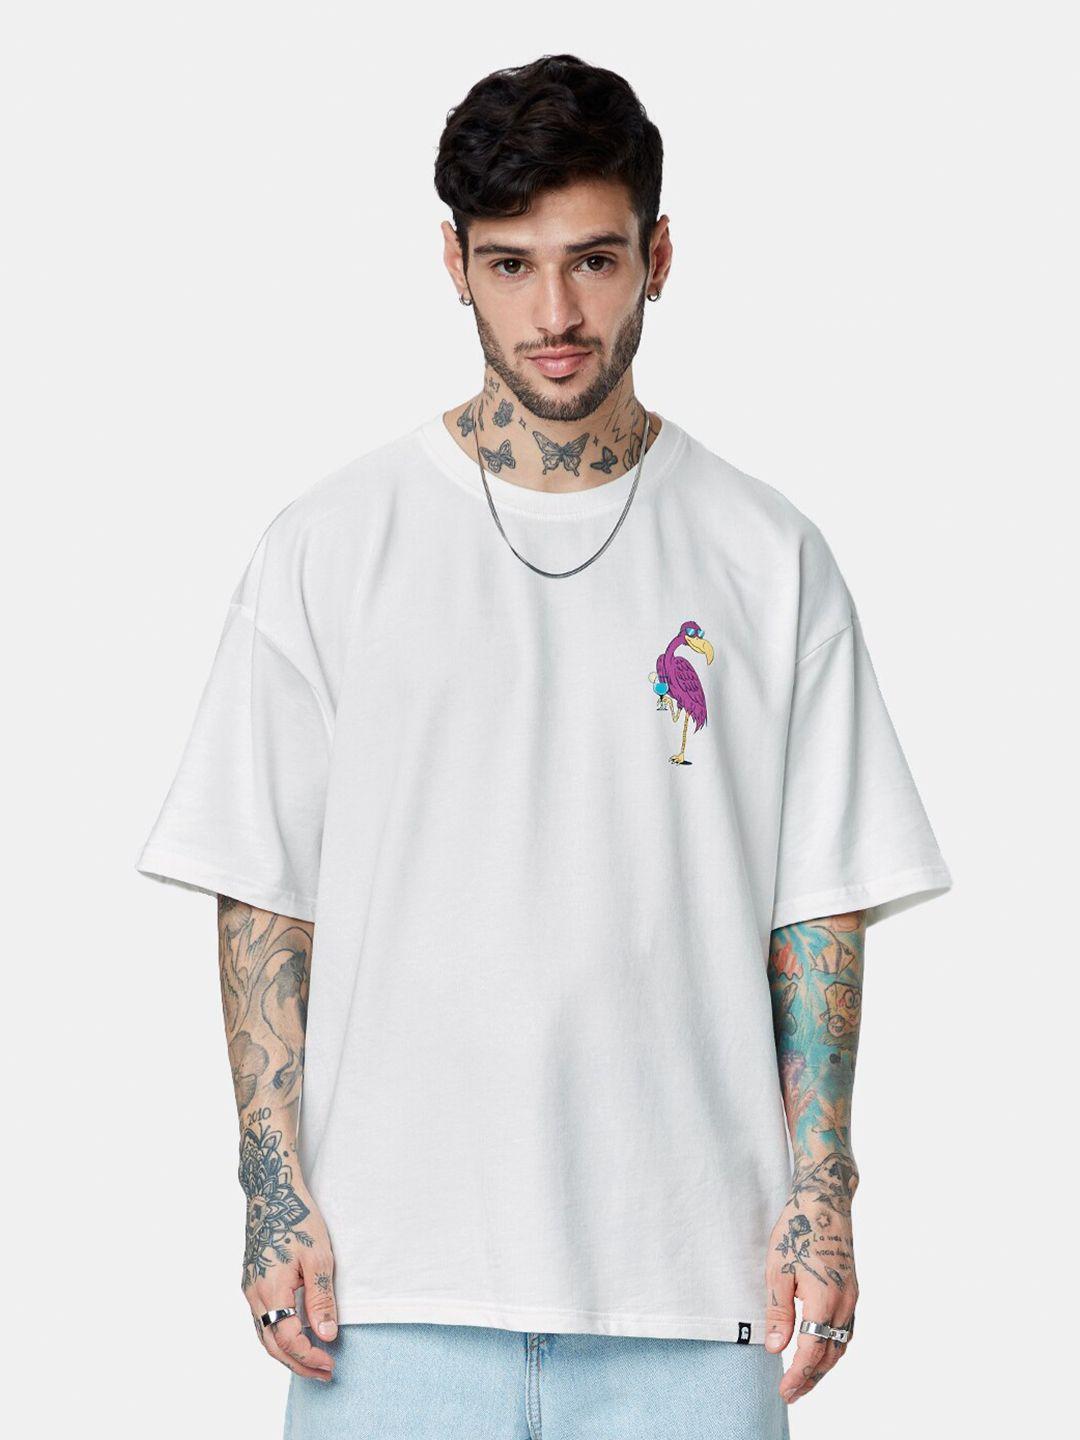 the souled store men white v-neck applique oversized t-shirt